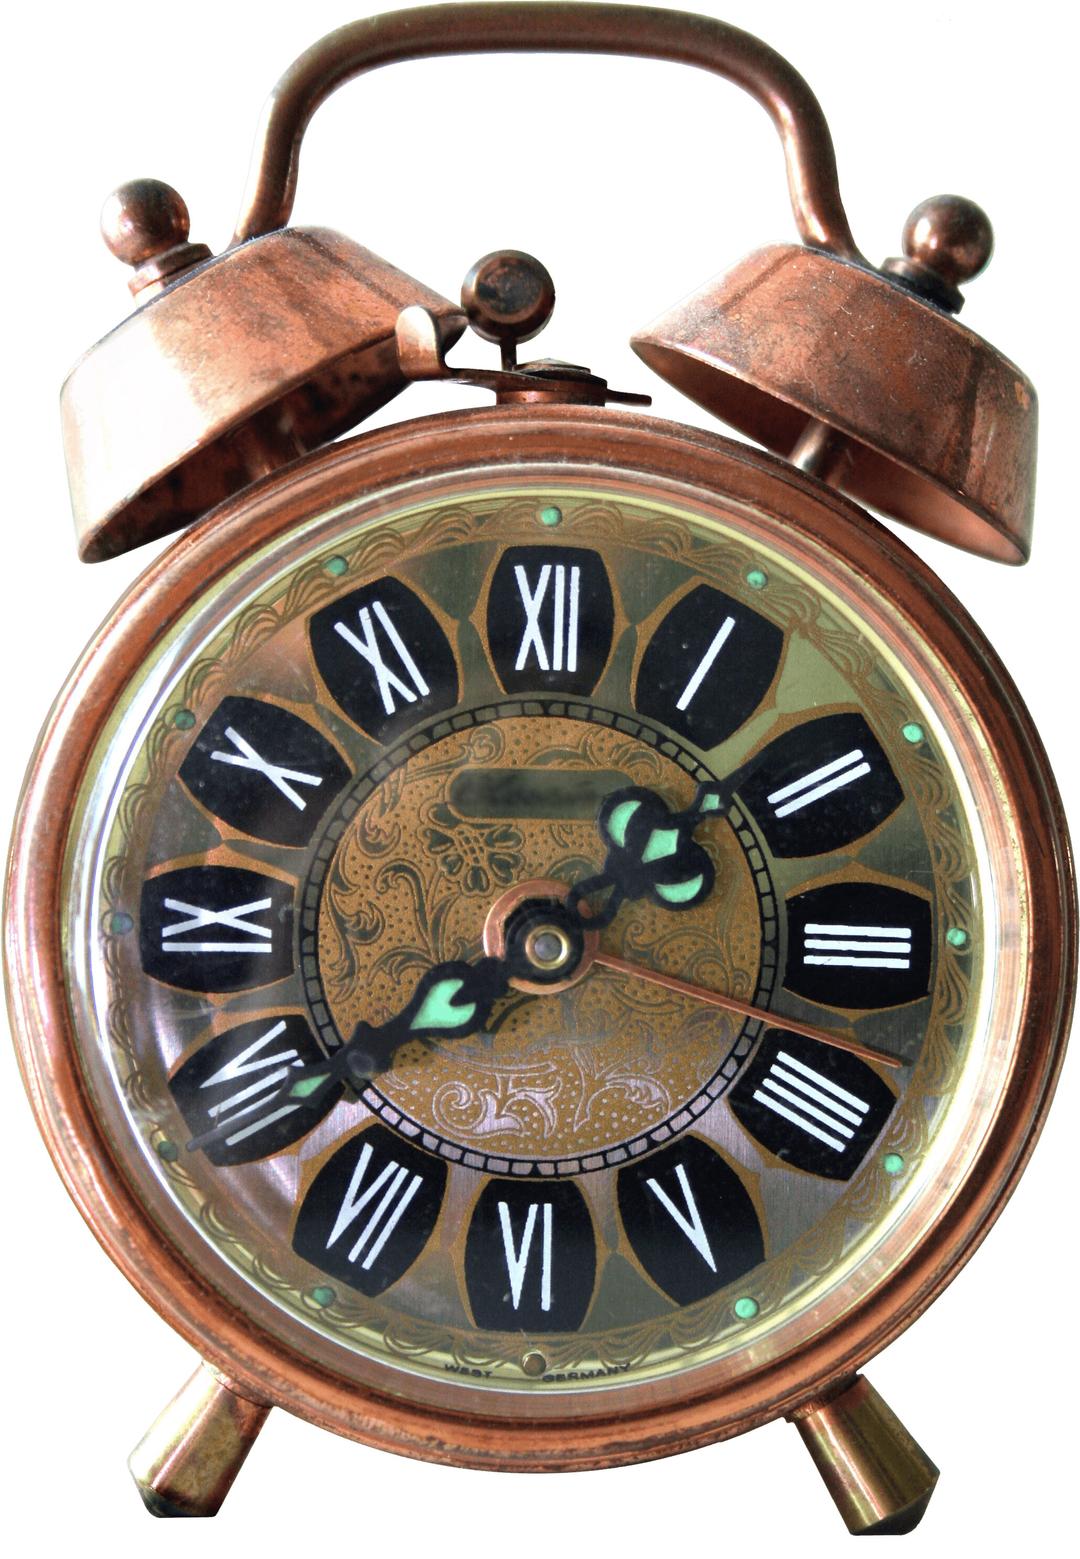 Vintage Alarm Clock png transparent